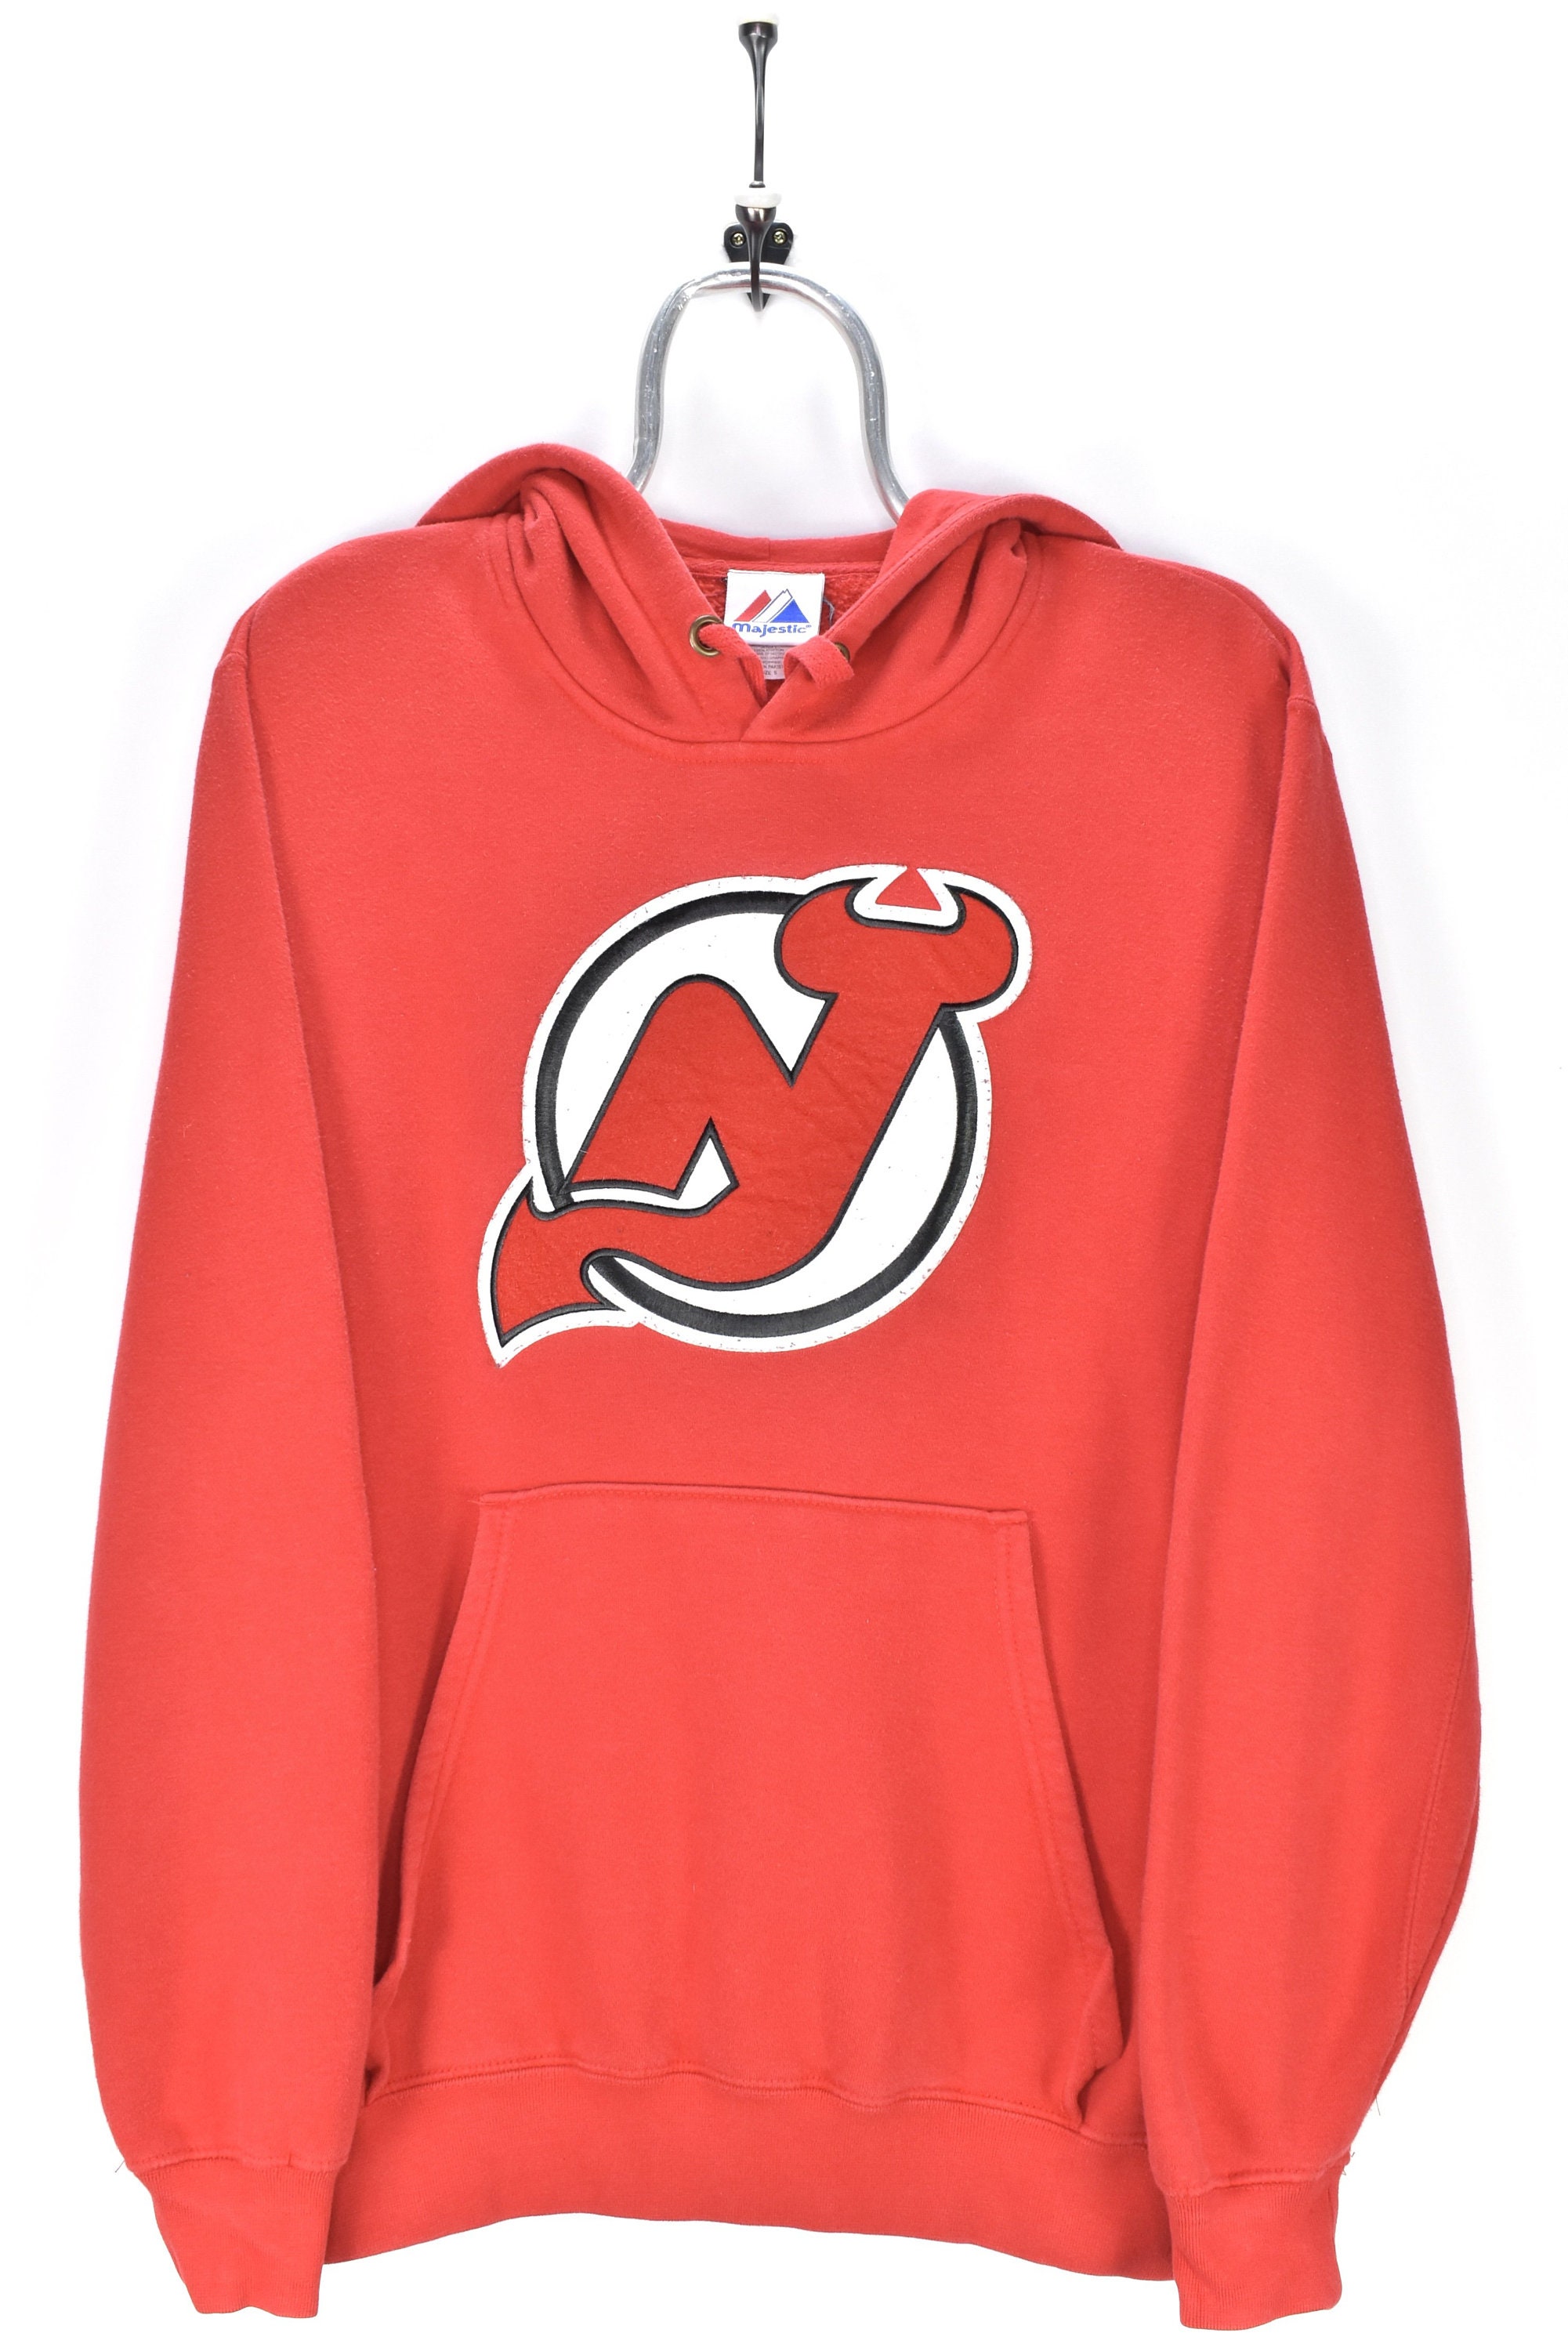 Vintage 1990's NHL New Jersey Devils Sweatshirt Hoodie Boy's